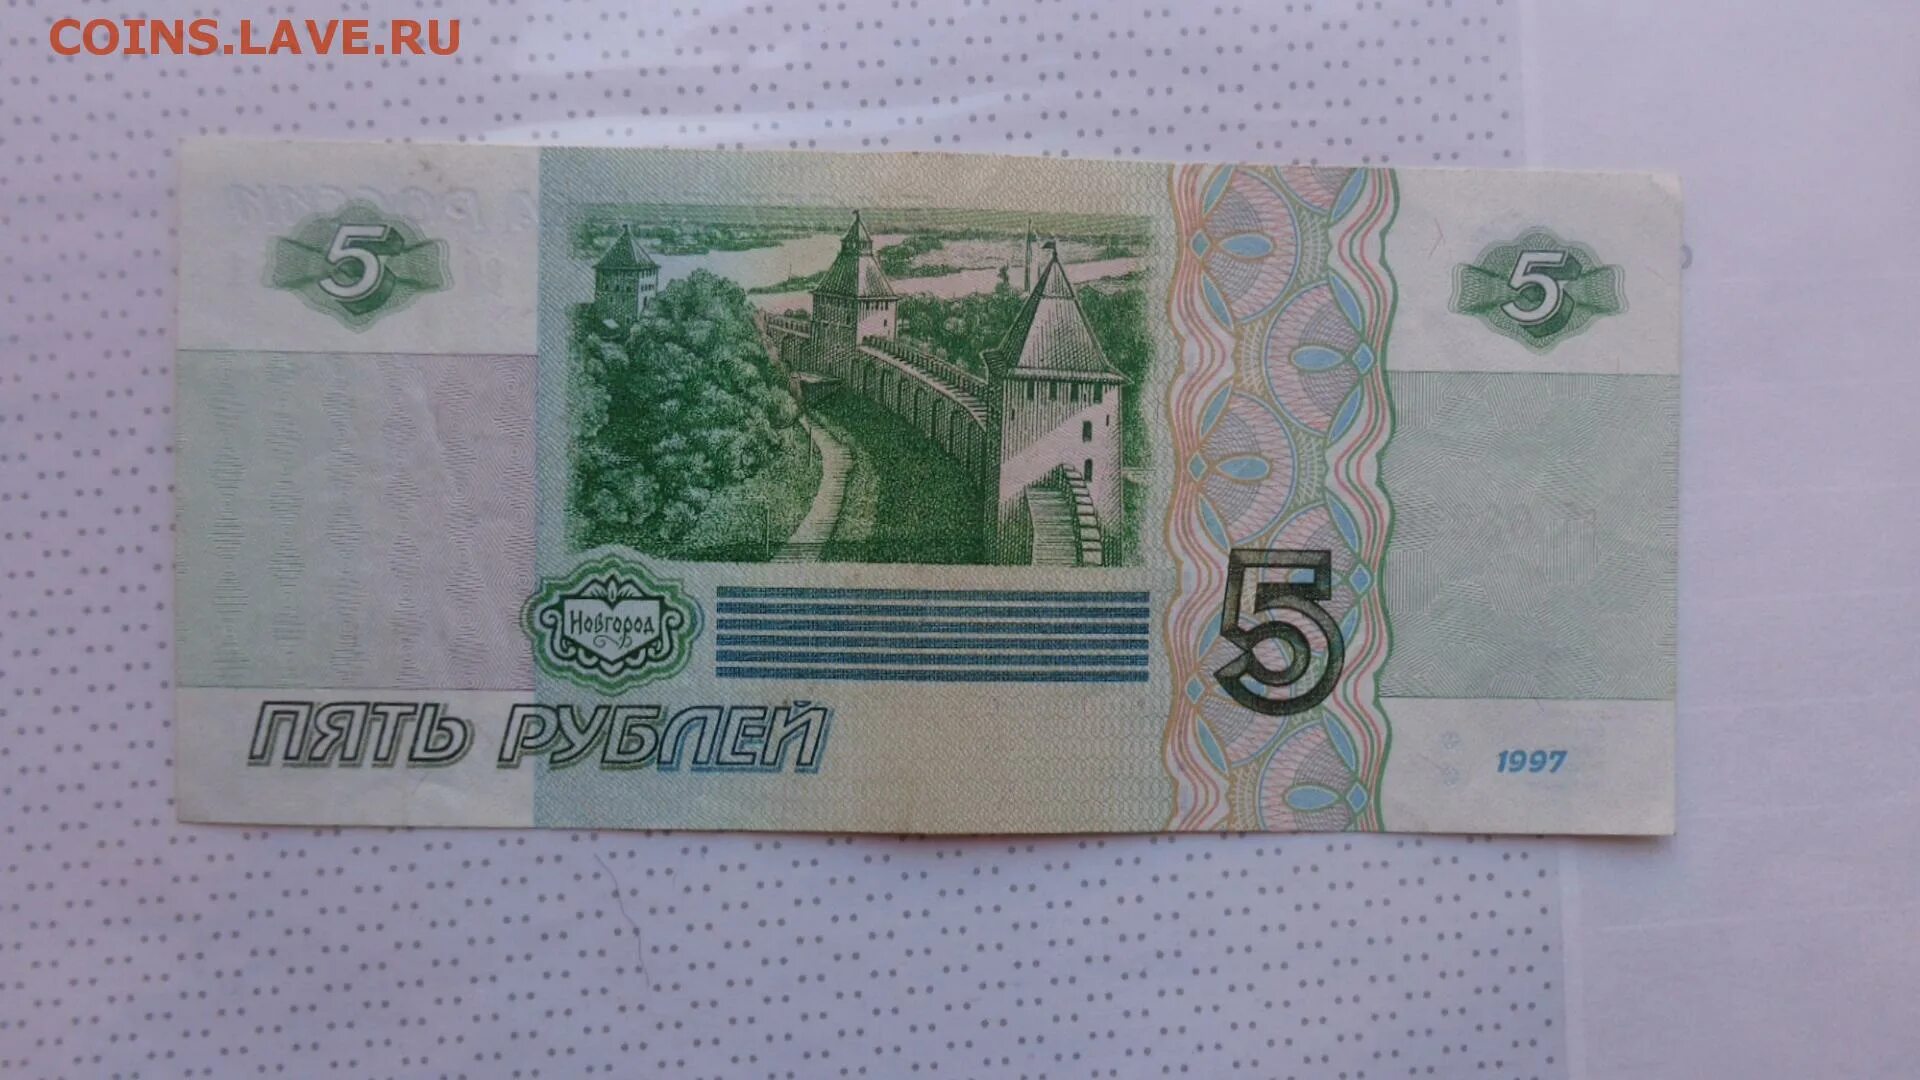 5 рублей в обращении. 5 Рублей 1997. Купюра 5 рублей 1997. Номинал 5 рублей бумажные. 5 Рублевая купюра бумажная.